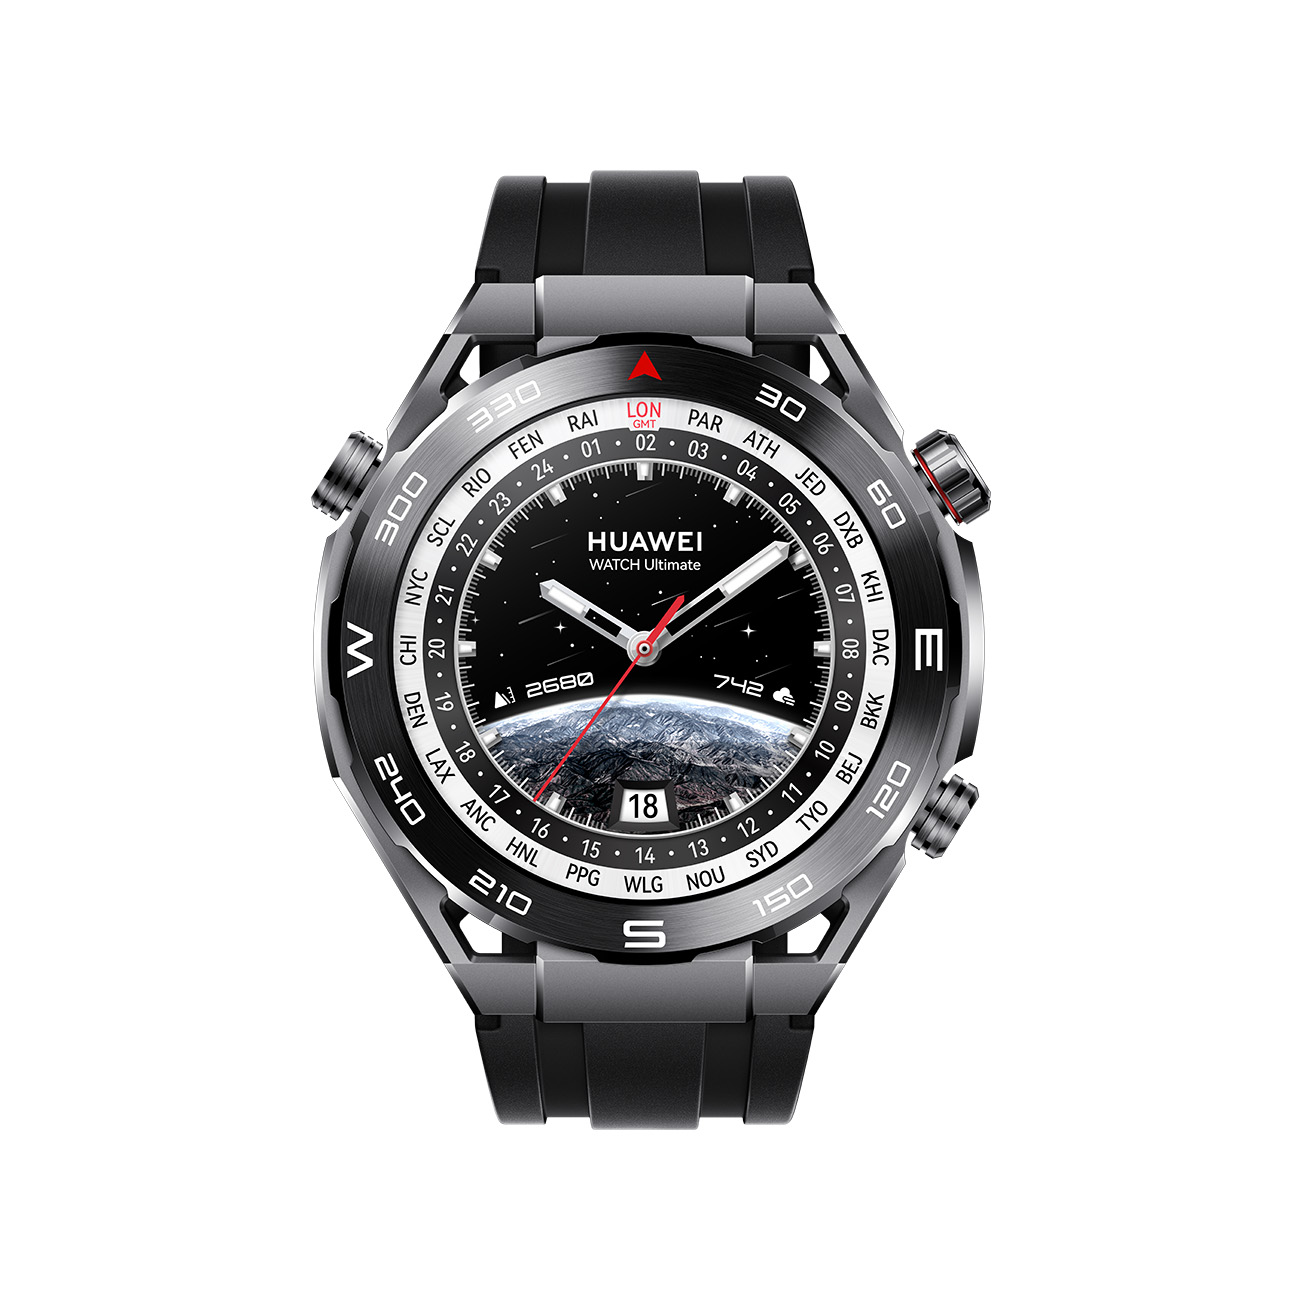 Huawei WATCH Ultimate | Smartwatch | 1,5-Zoll LTPO AMOLED Display | Saphir-Zifferblatt | 100 m Tauchtechnik | 24/7 Gesundheitsmanagement | schwarz von Huawei